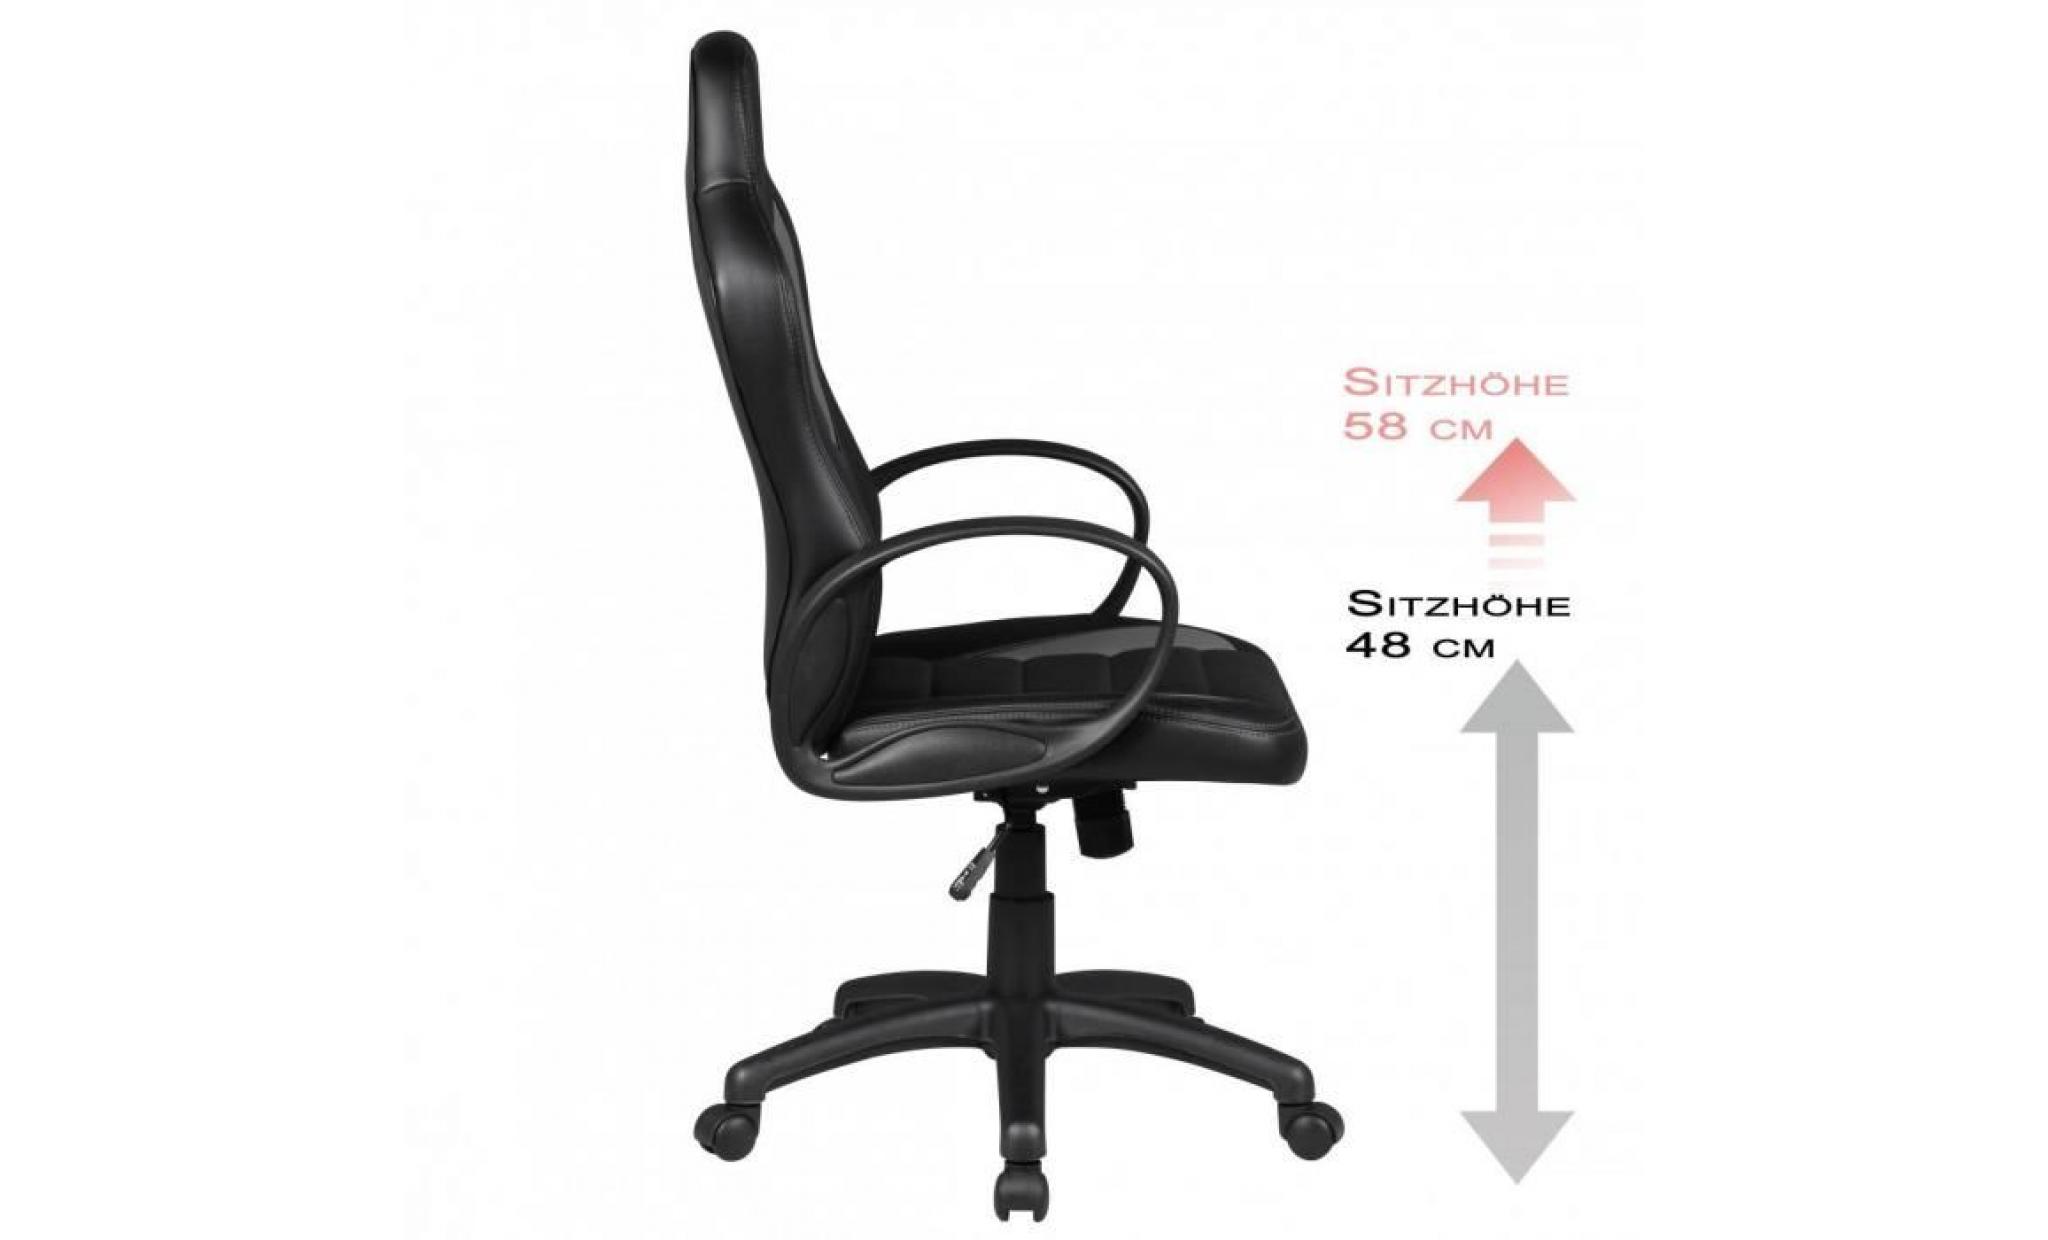 chaise de bureau dakar noir gris racing chefsessel racer chaise pivotante chaise inclinable 120 kg fonction de bureau pas cher